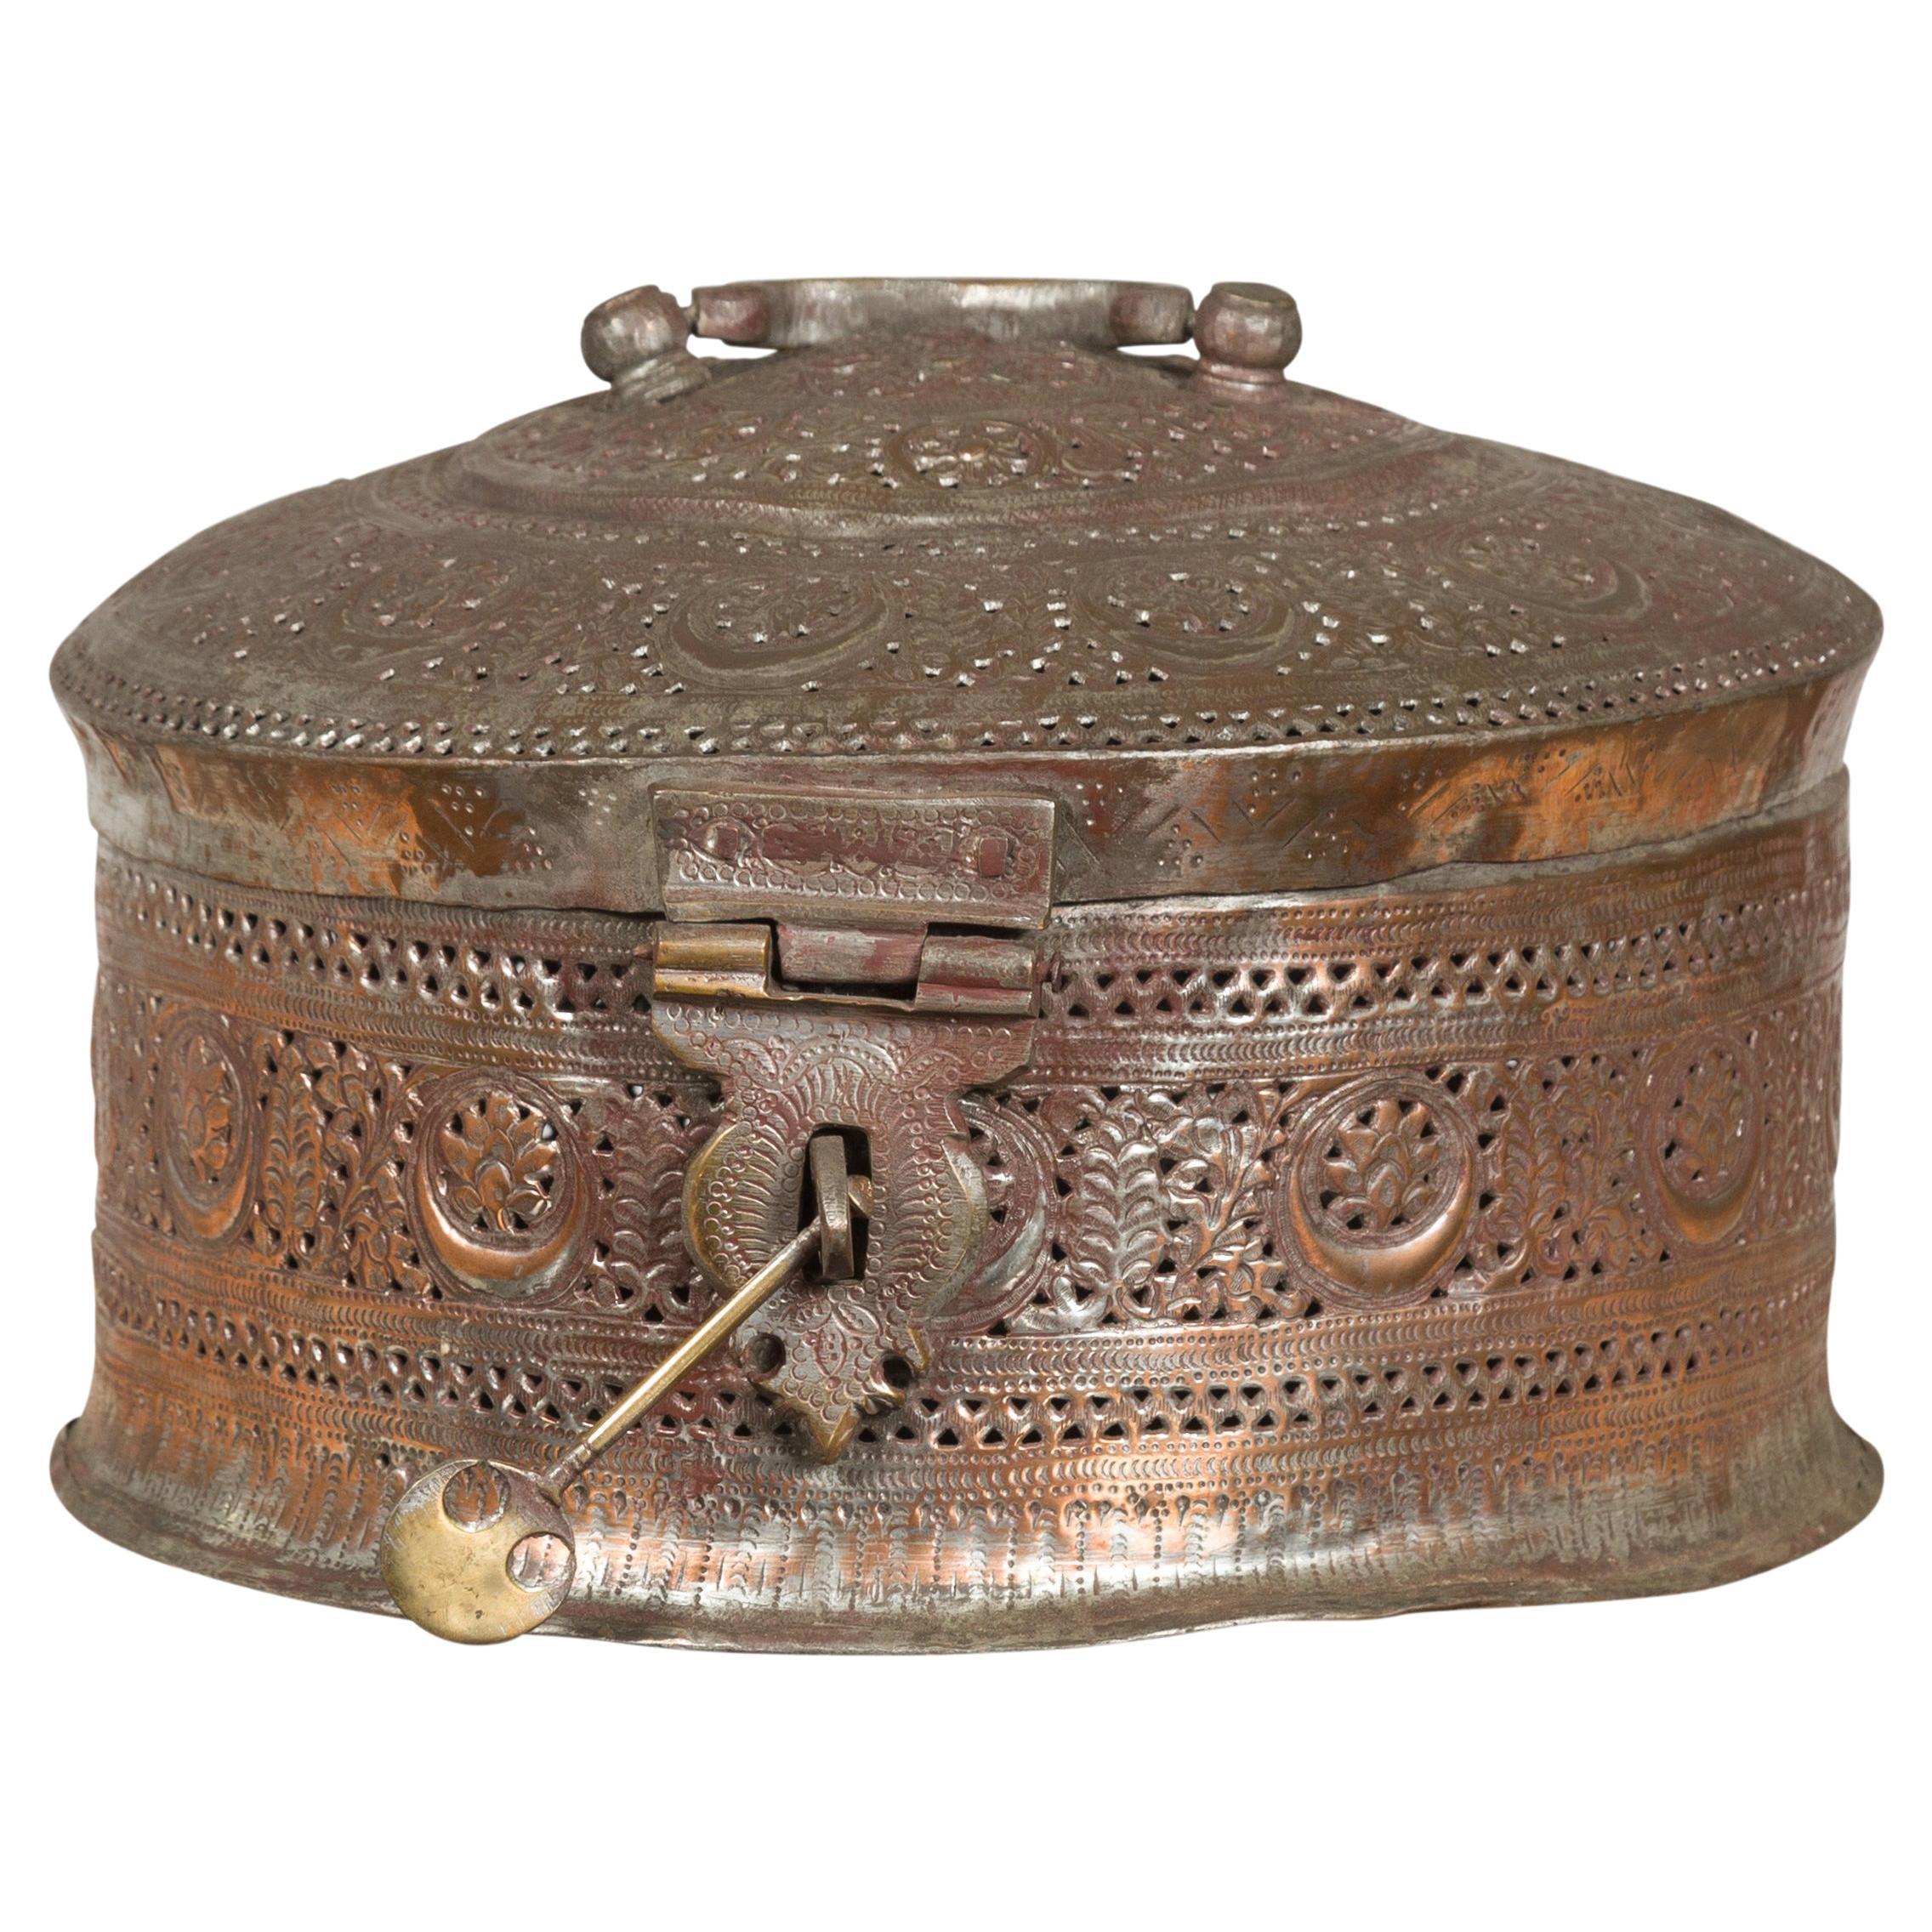 Boîte indienne ronde du 19ème siècle en métal plaqué argent avec motifs de feuillage percés